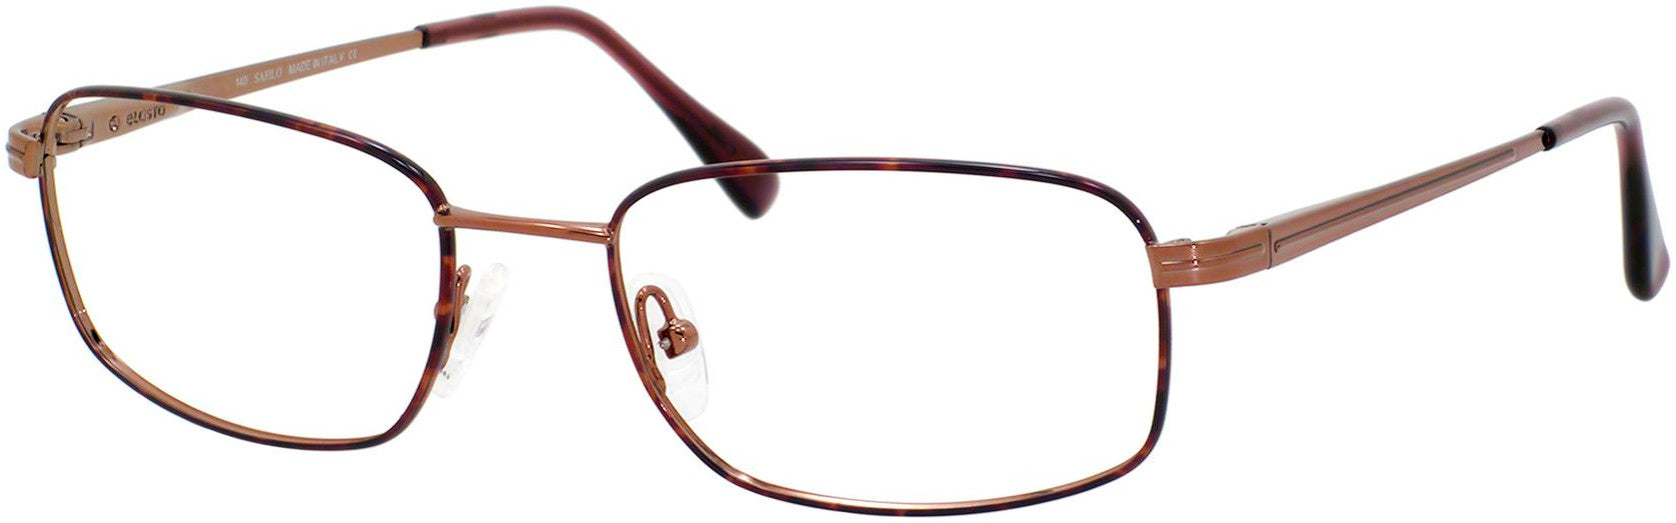  Elasta 7104 Rectangular Eyeglasses 0R69-0R69  Havana Copper (00 Demo Lens)